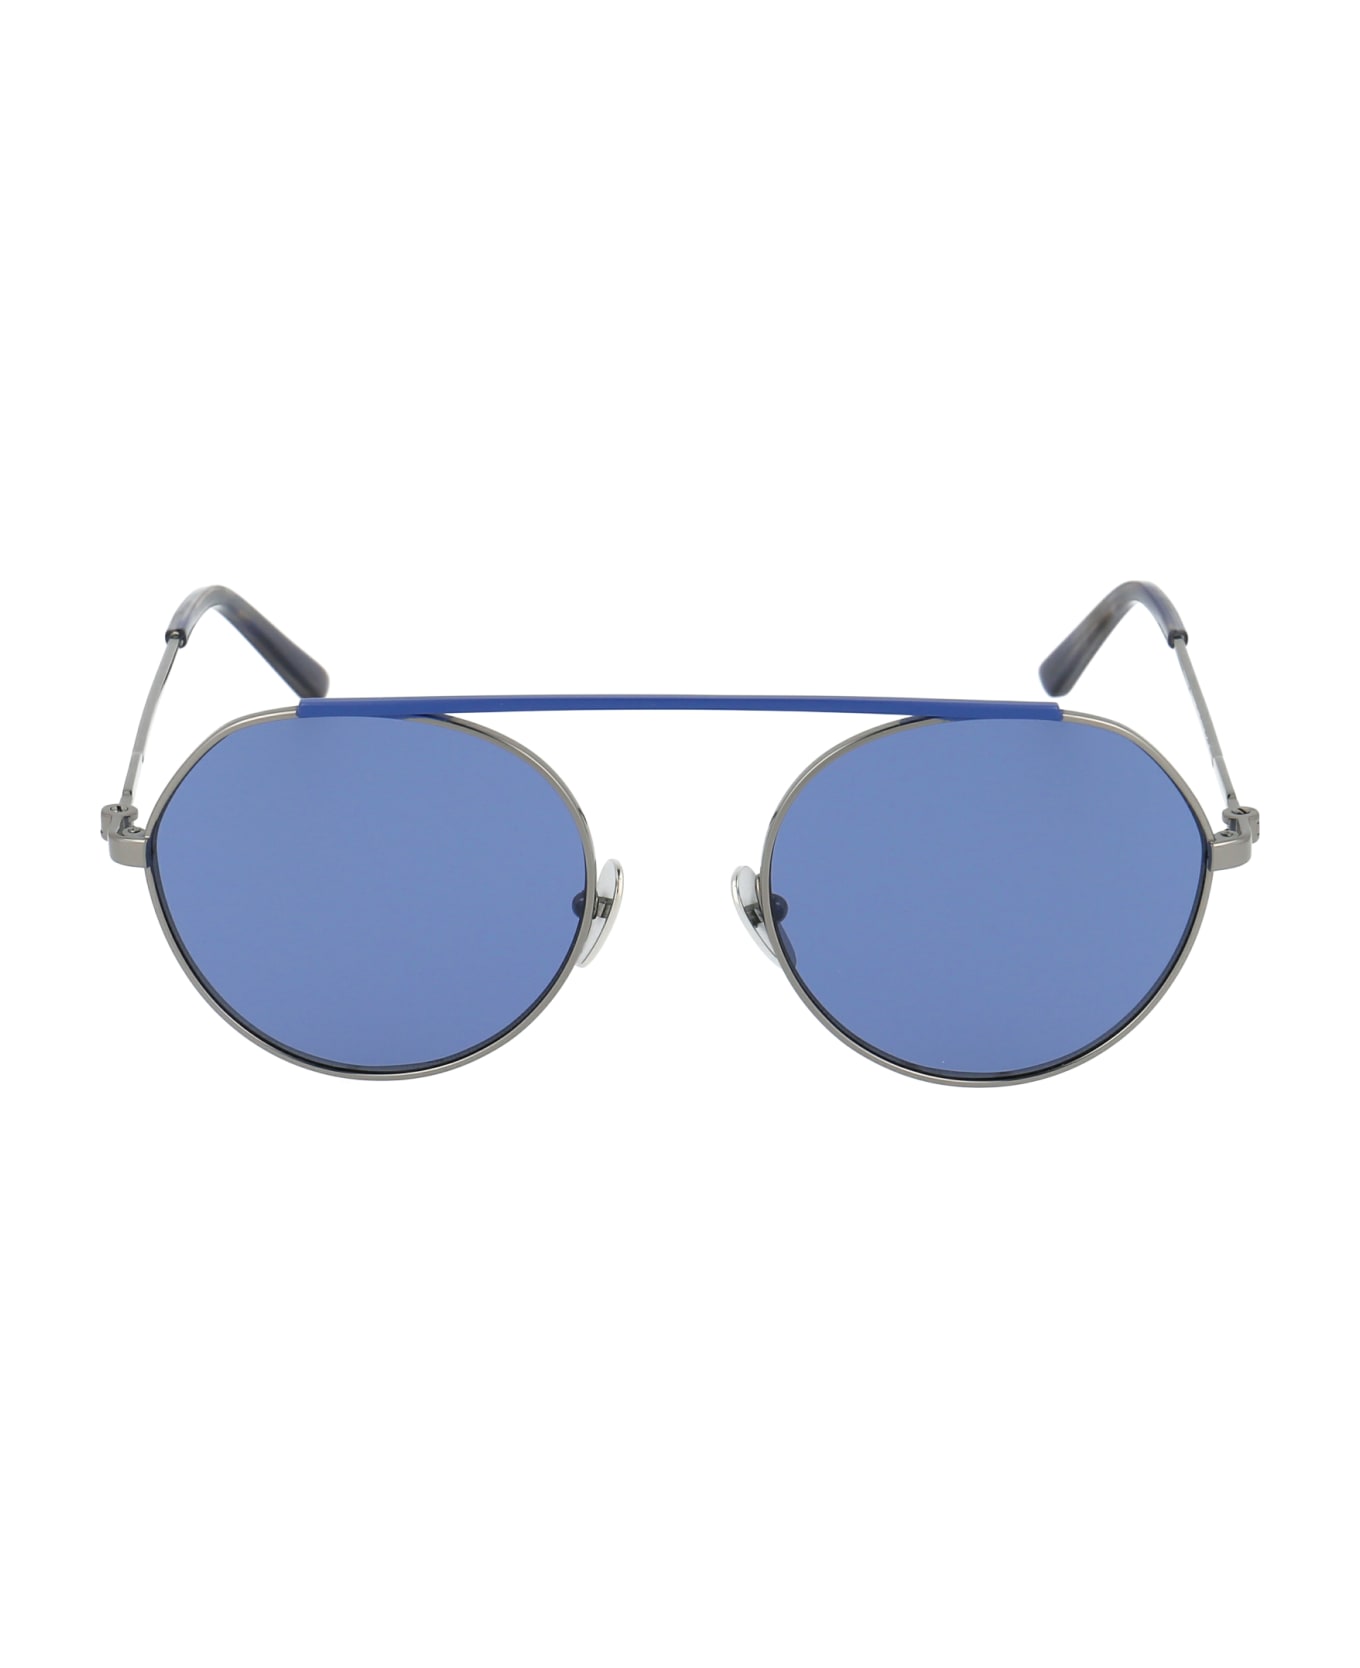 Calvin Klein Ck19149s Sunglasses - 009 BLUE サングラス